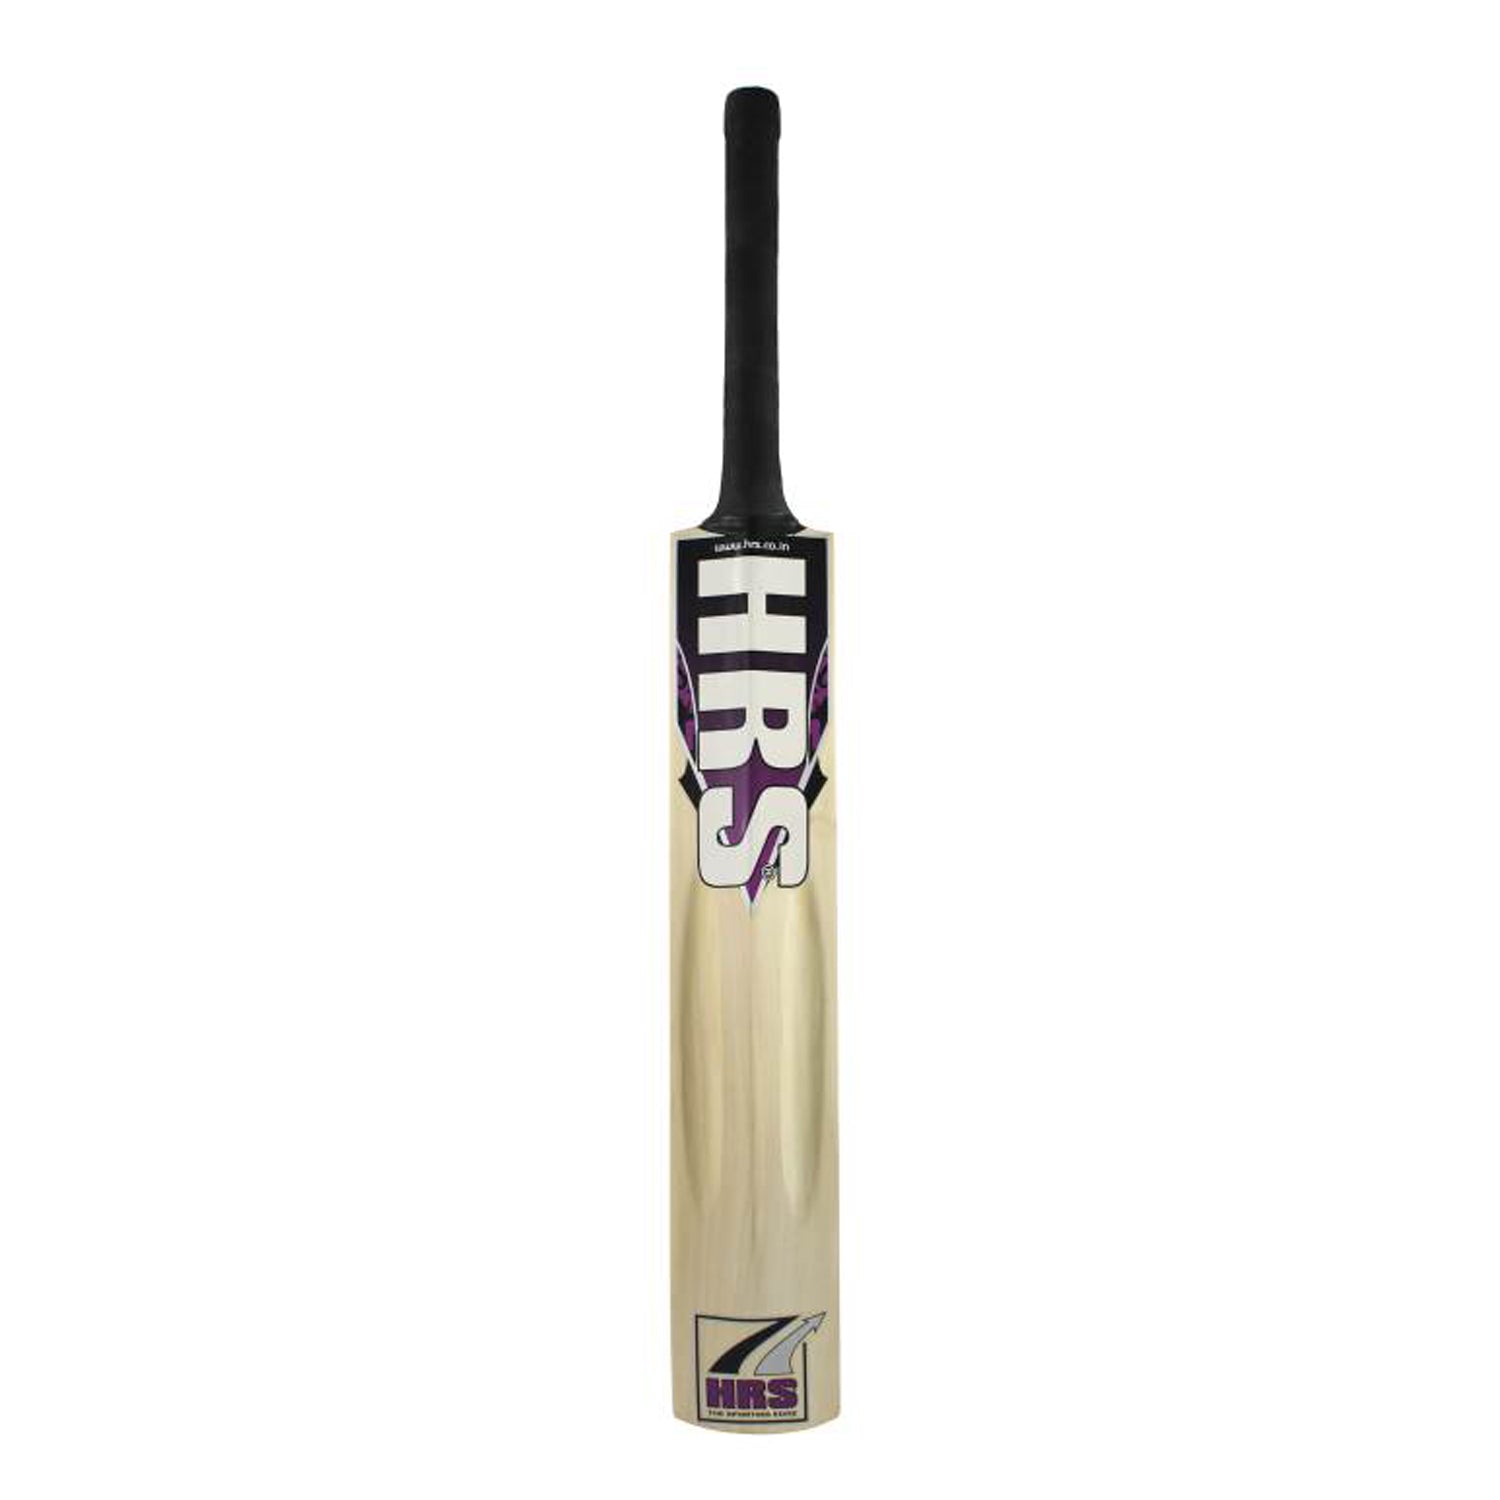 HRS Striker Tennis ball Cricket Bat - Best Price online Prokicksports.com